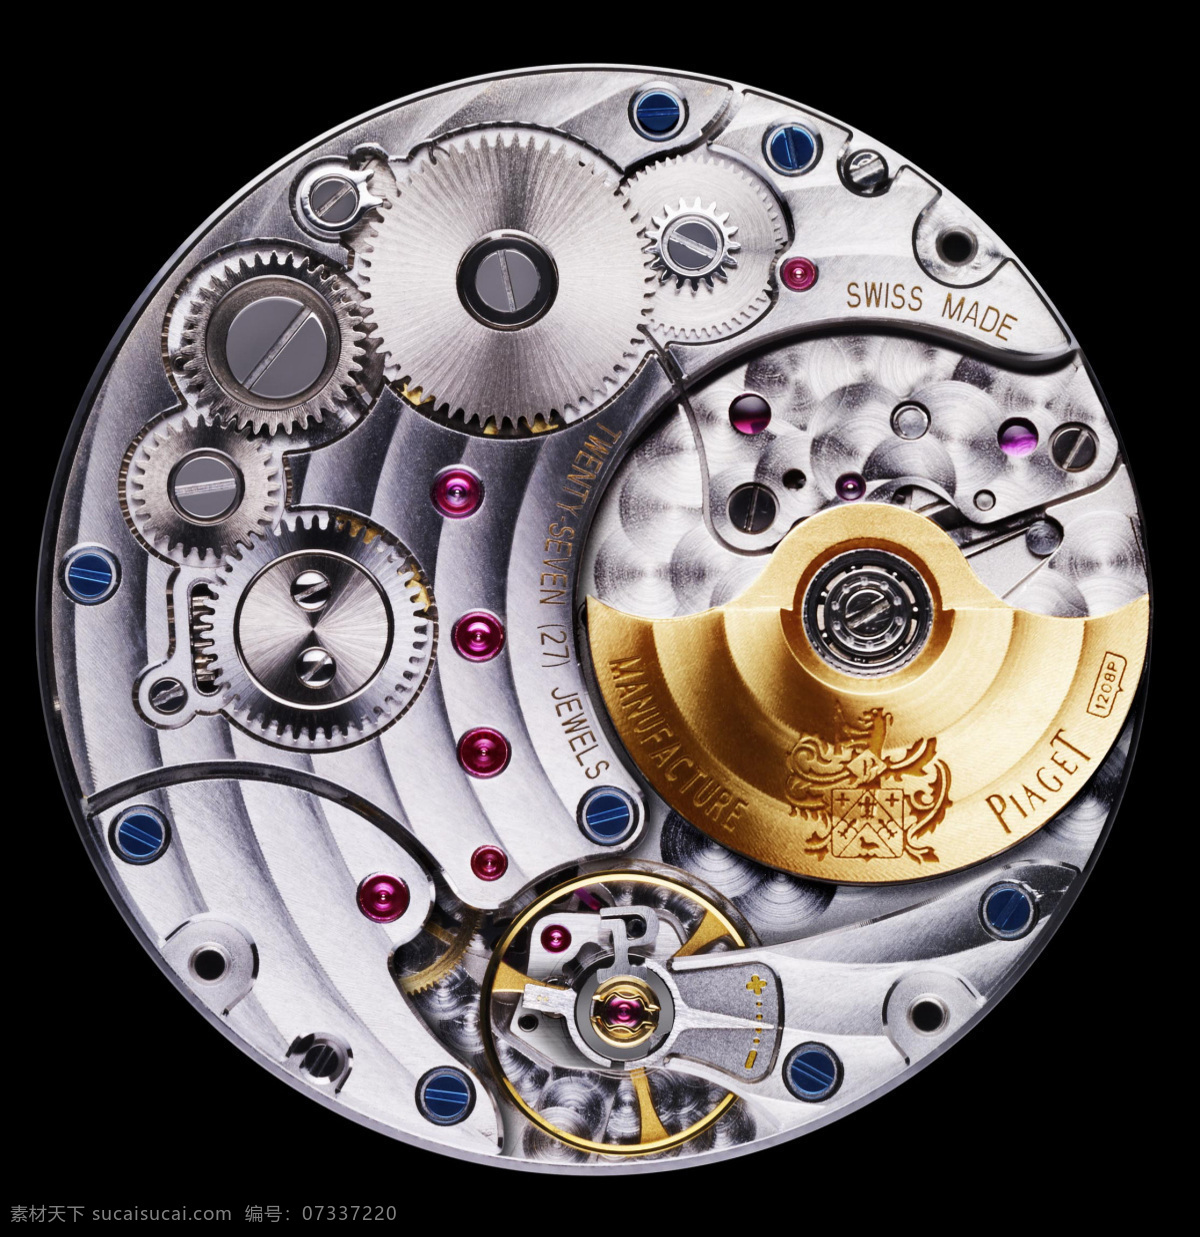 表 齿轮 机械 精美 奢侈品 生活百科 生活素材 机芯 watch movement 腕表 手表 艺术 时间 淘宝素材 其他淘宝素材